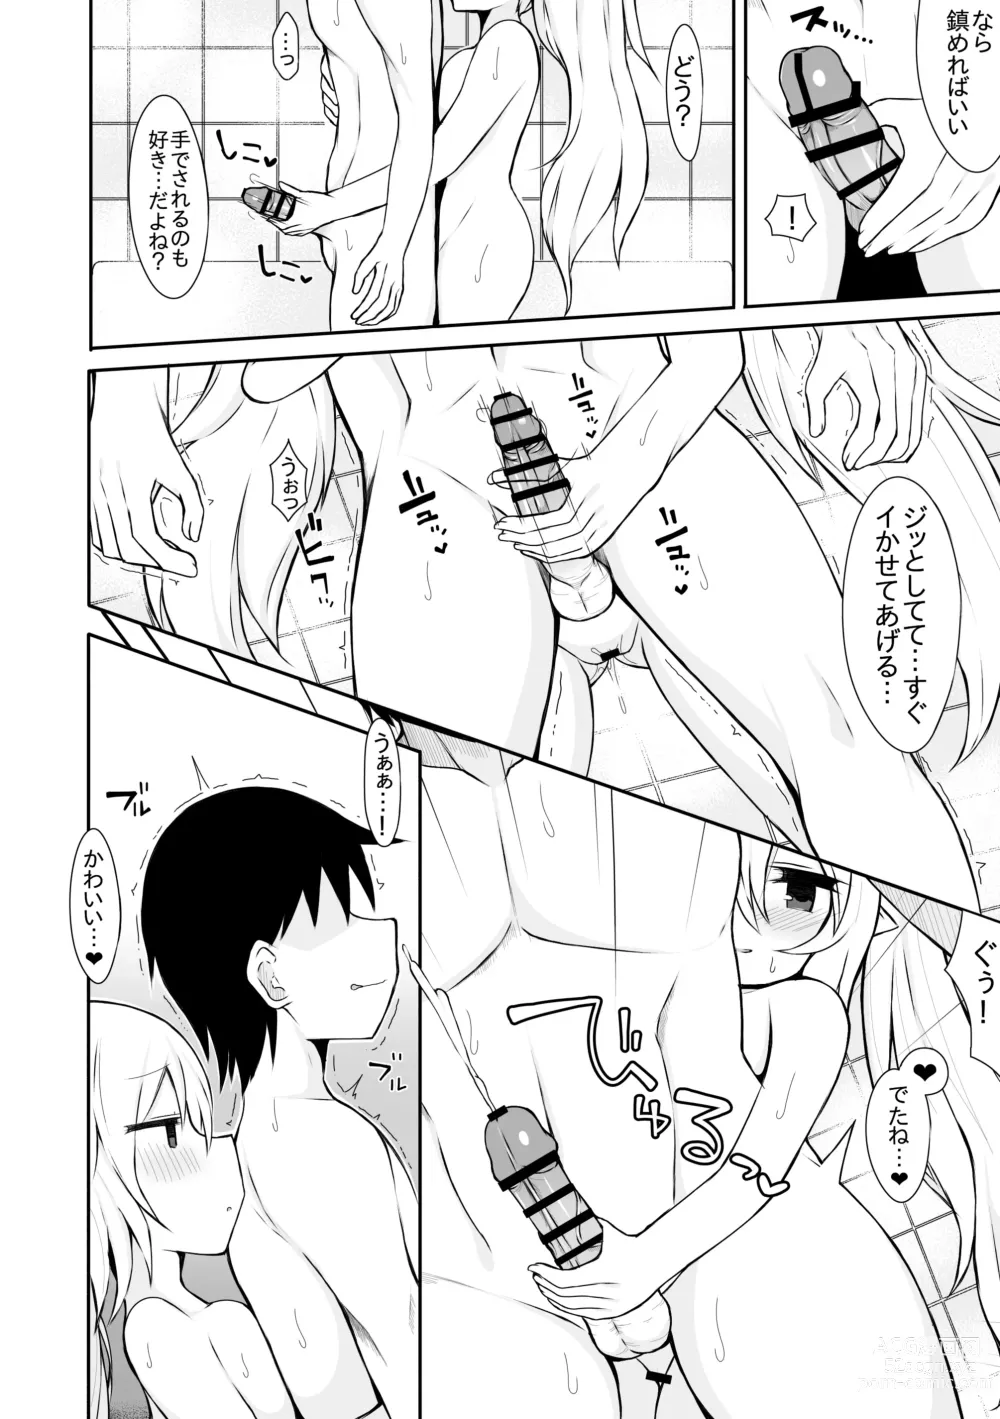 Page 7 of doujinshi Yuki Usagi no Manga